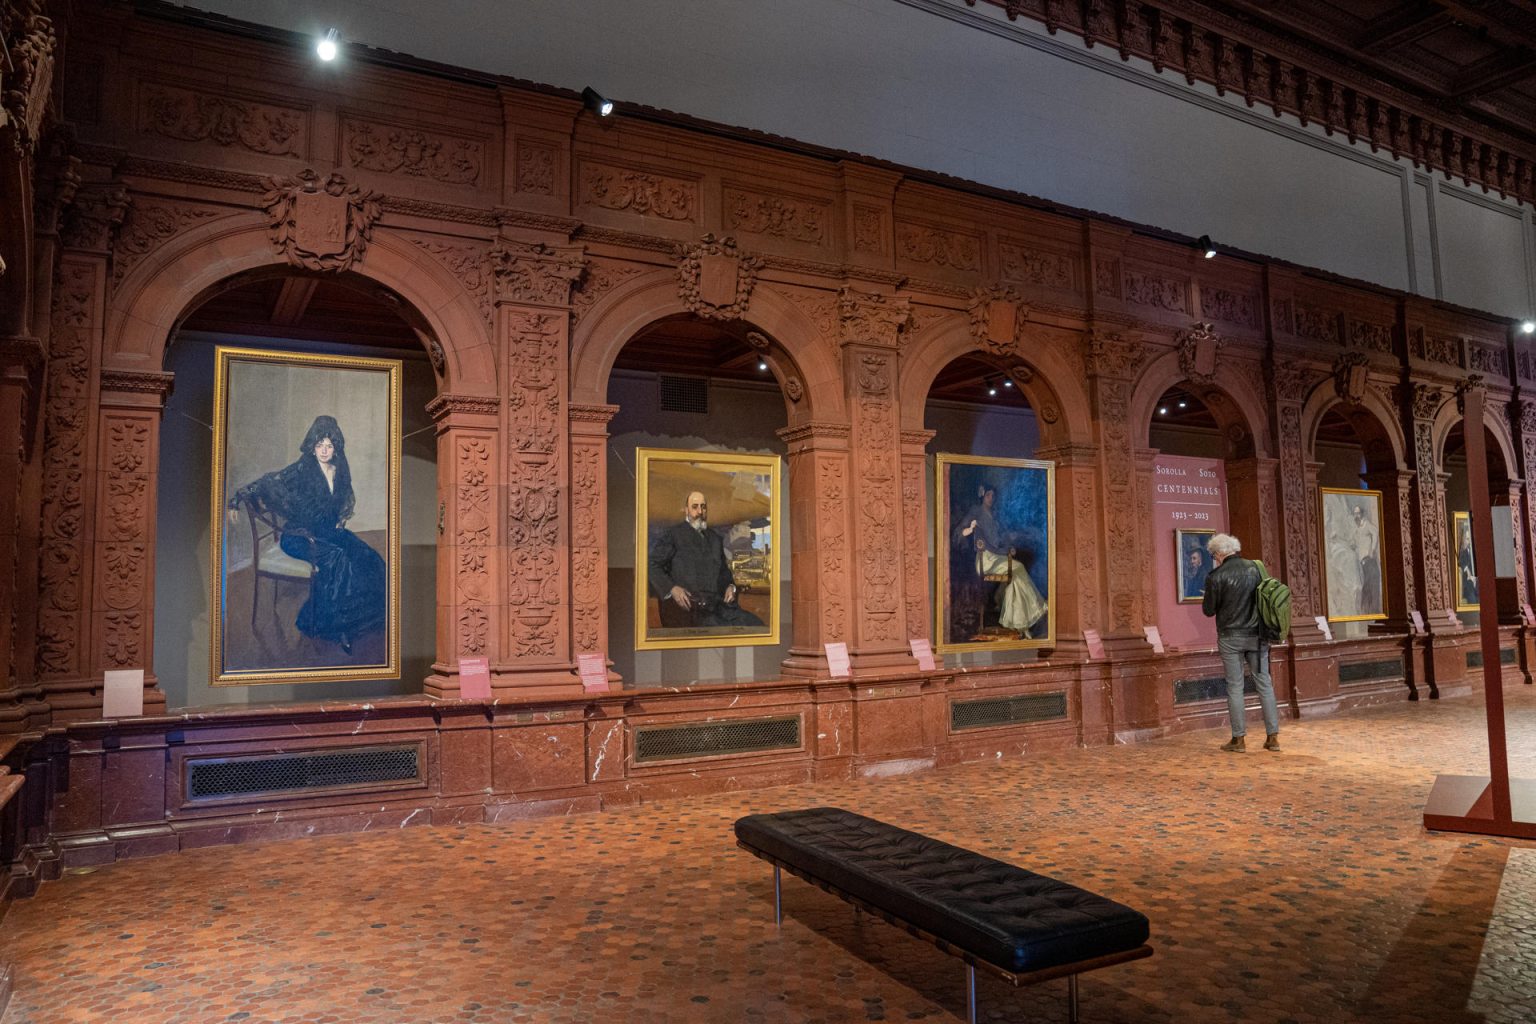 Una persona observa unas obras del pintor Joaquín Sorolla expuestas en la muestra "Sorolla Vision of Spain" en el Hispanic Society Musuem and Library, hoy en Nueva York (EE. UU). EFE/Ángel Colmenares